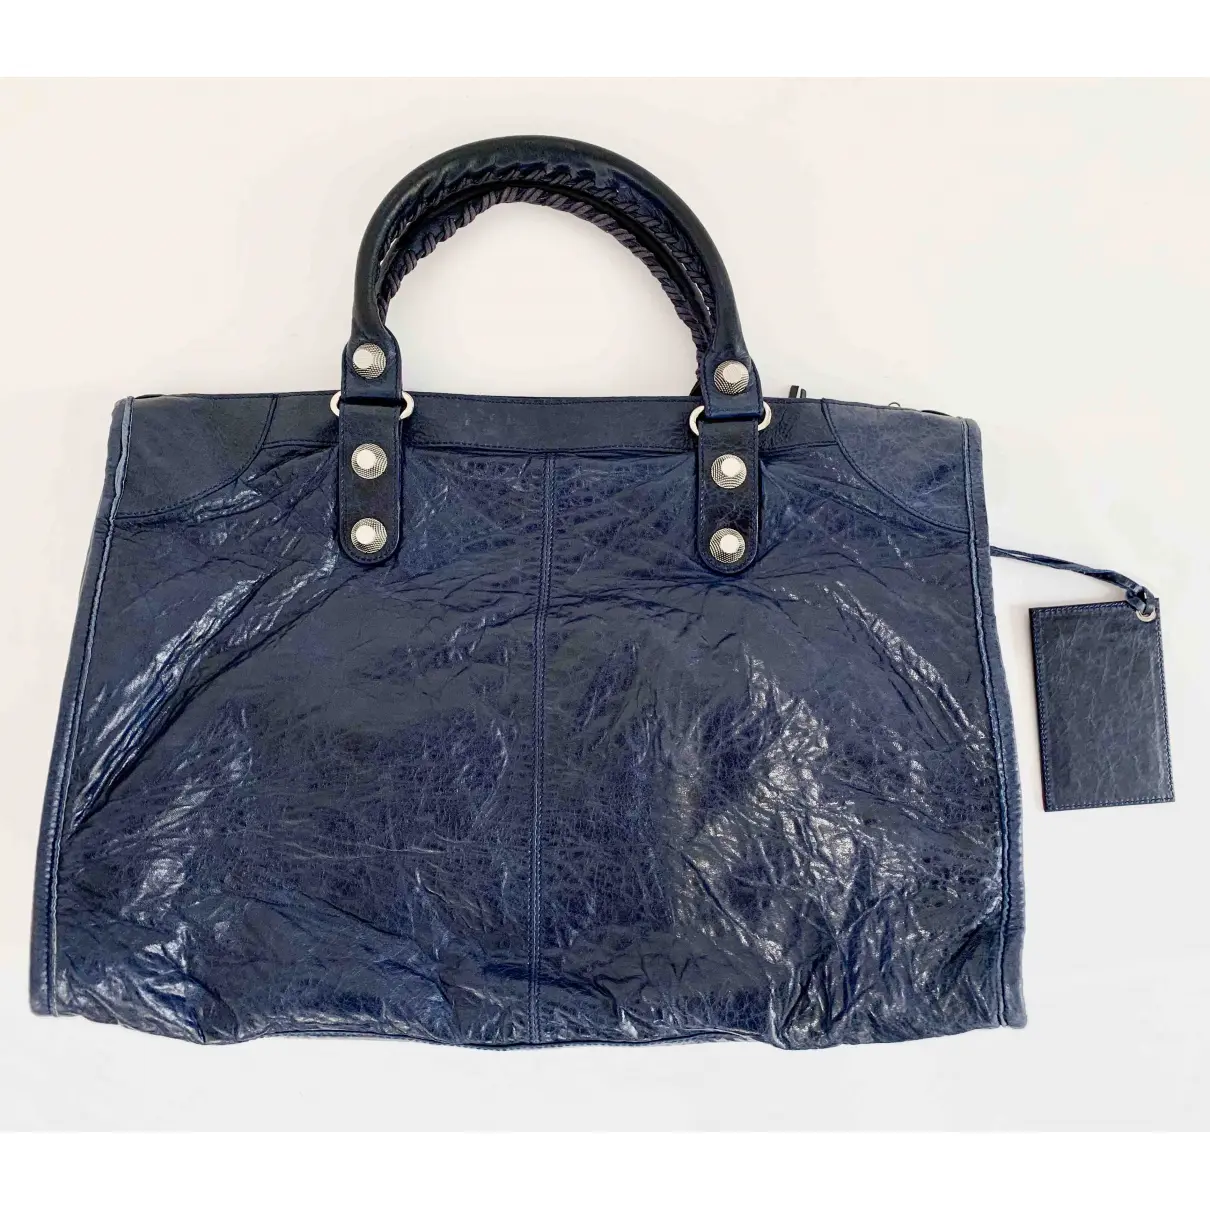 Buy Balenciaga Weekender leather handbag online